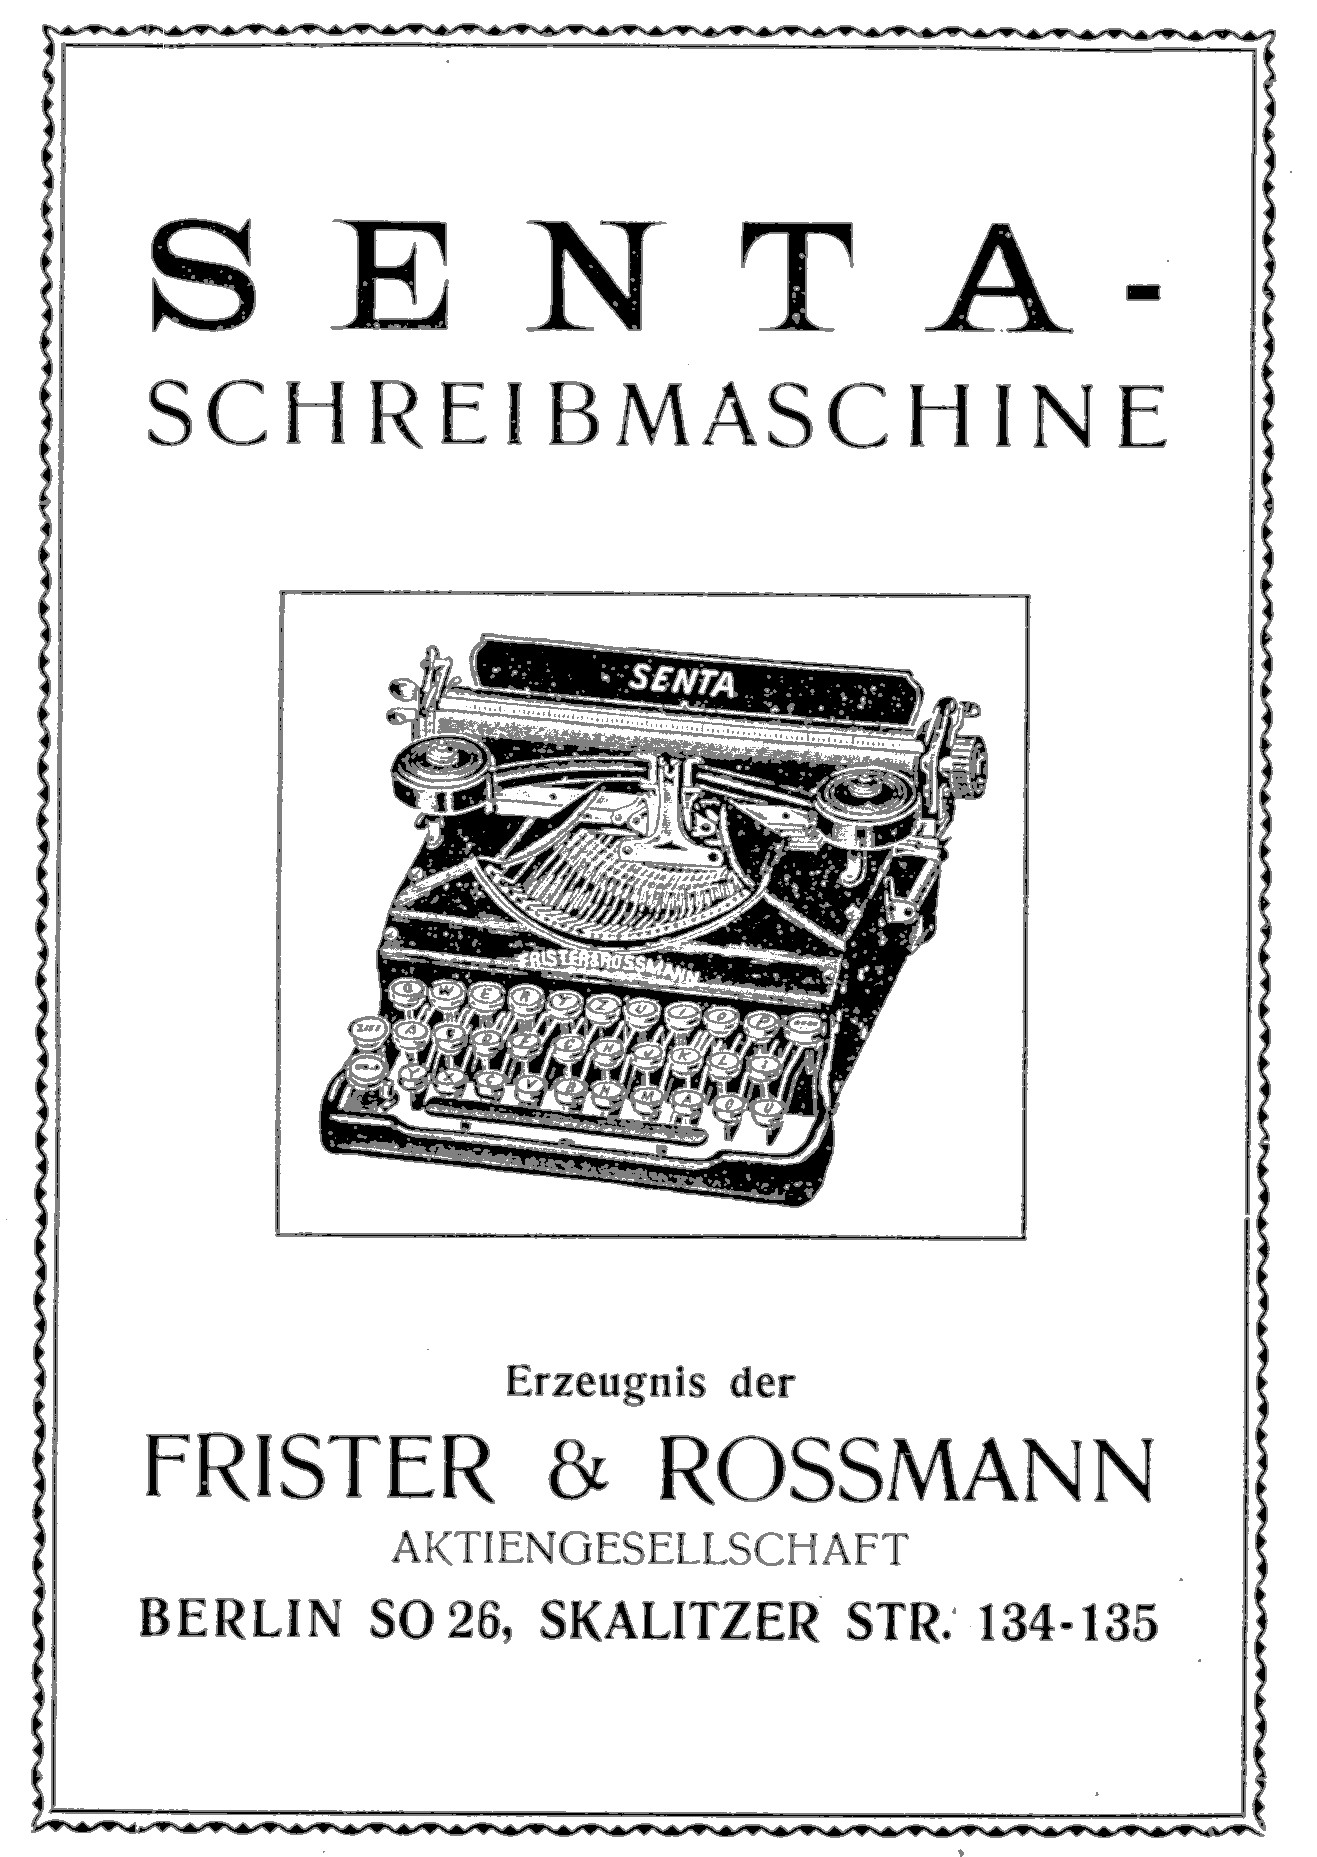 Senta Frister & Rossmann